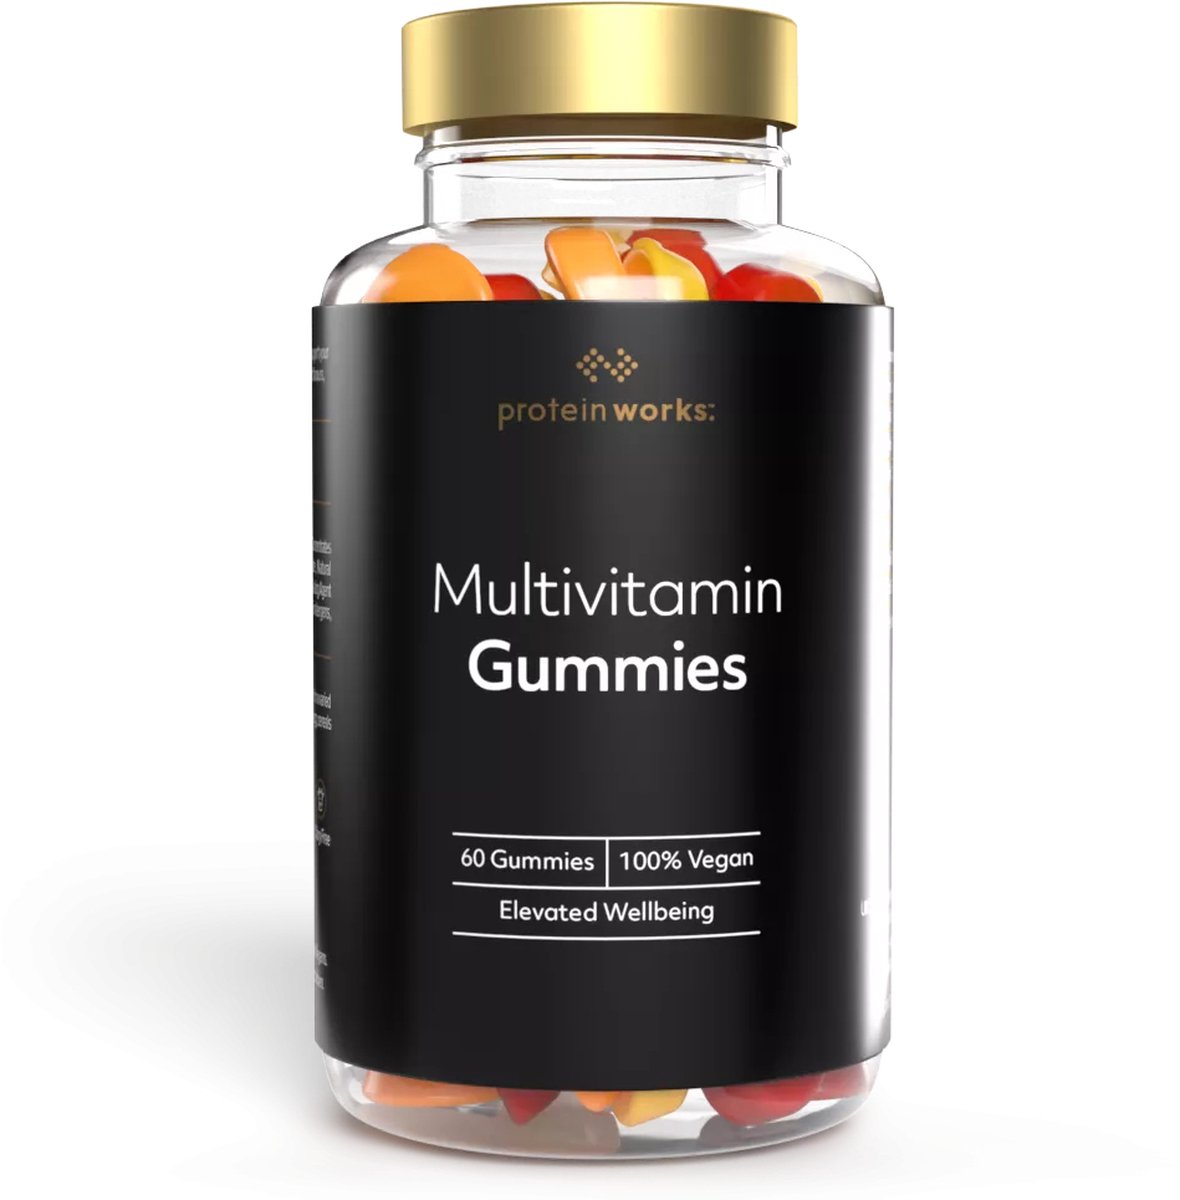 The Protein Works - Multivitamin Gummies